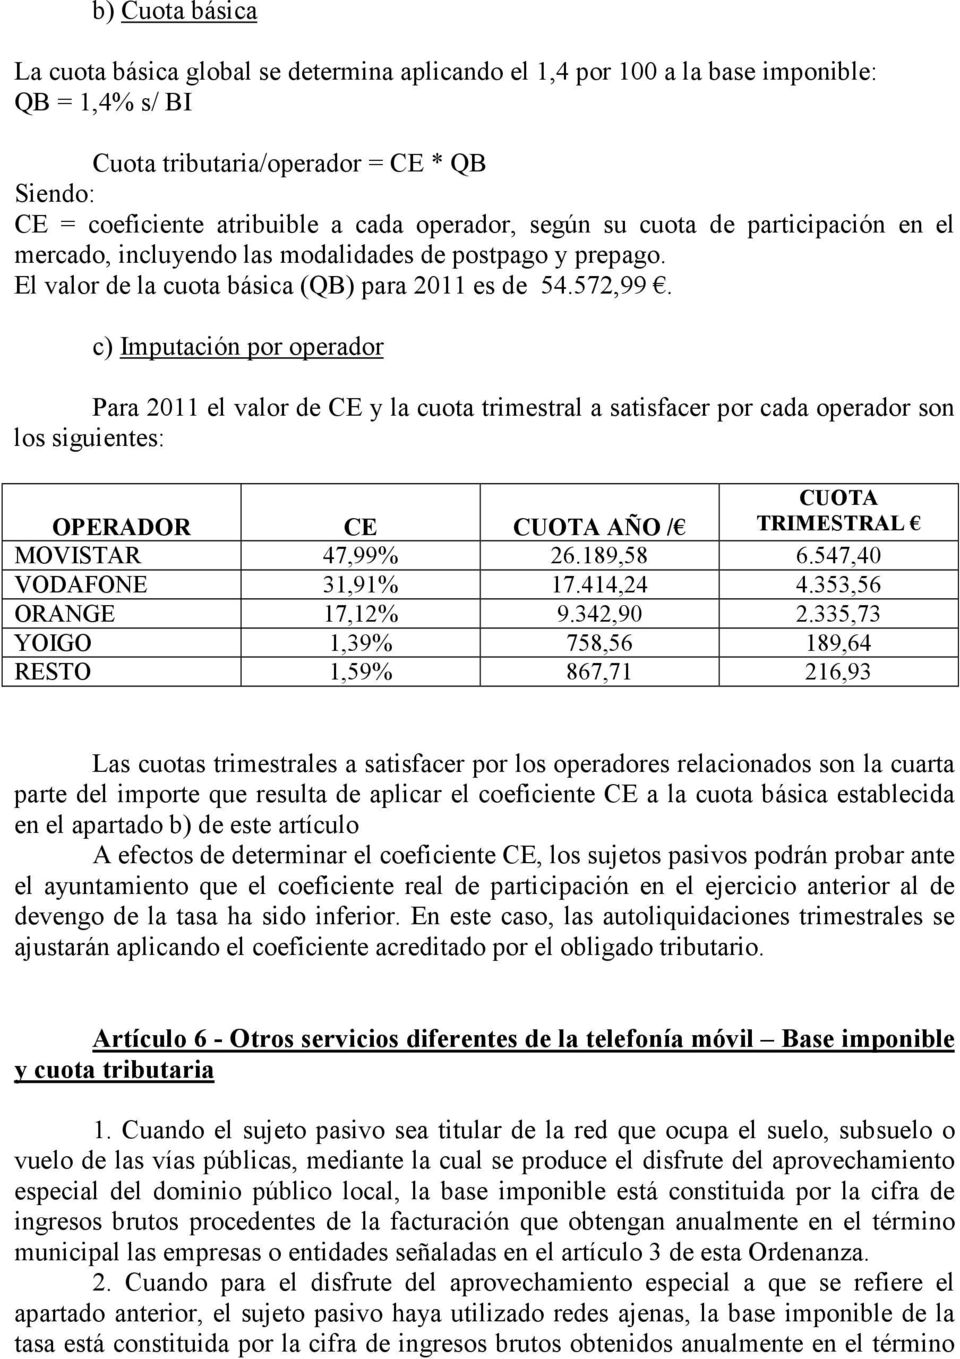 c) Imputación por operador Para 2011 el valor de CE y la cuota trimestral a satisfacer por cada operador son los siguientes: OPERADOR CE CUOTA AÑO / CUOTA TRIMESTRAL MOVISTAR 47,99% 26.189,58 6.